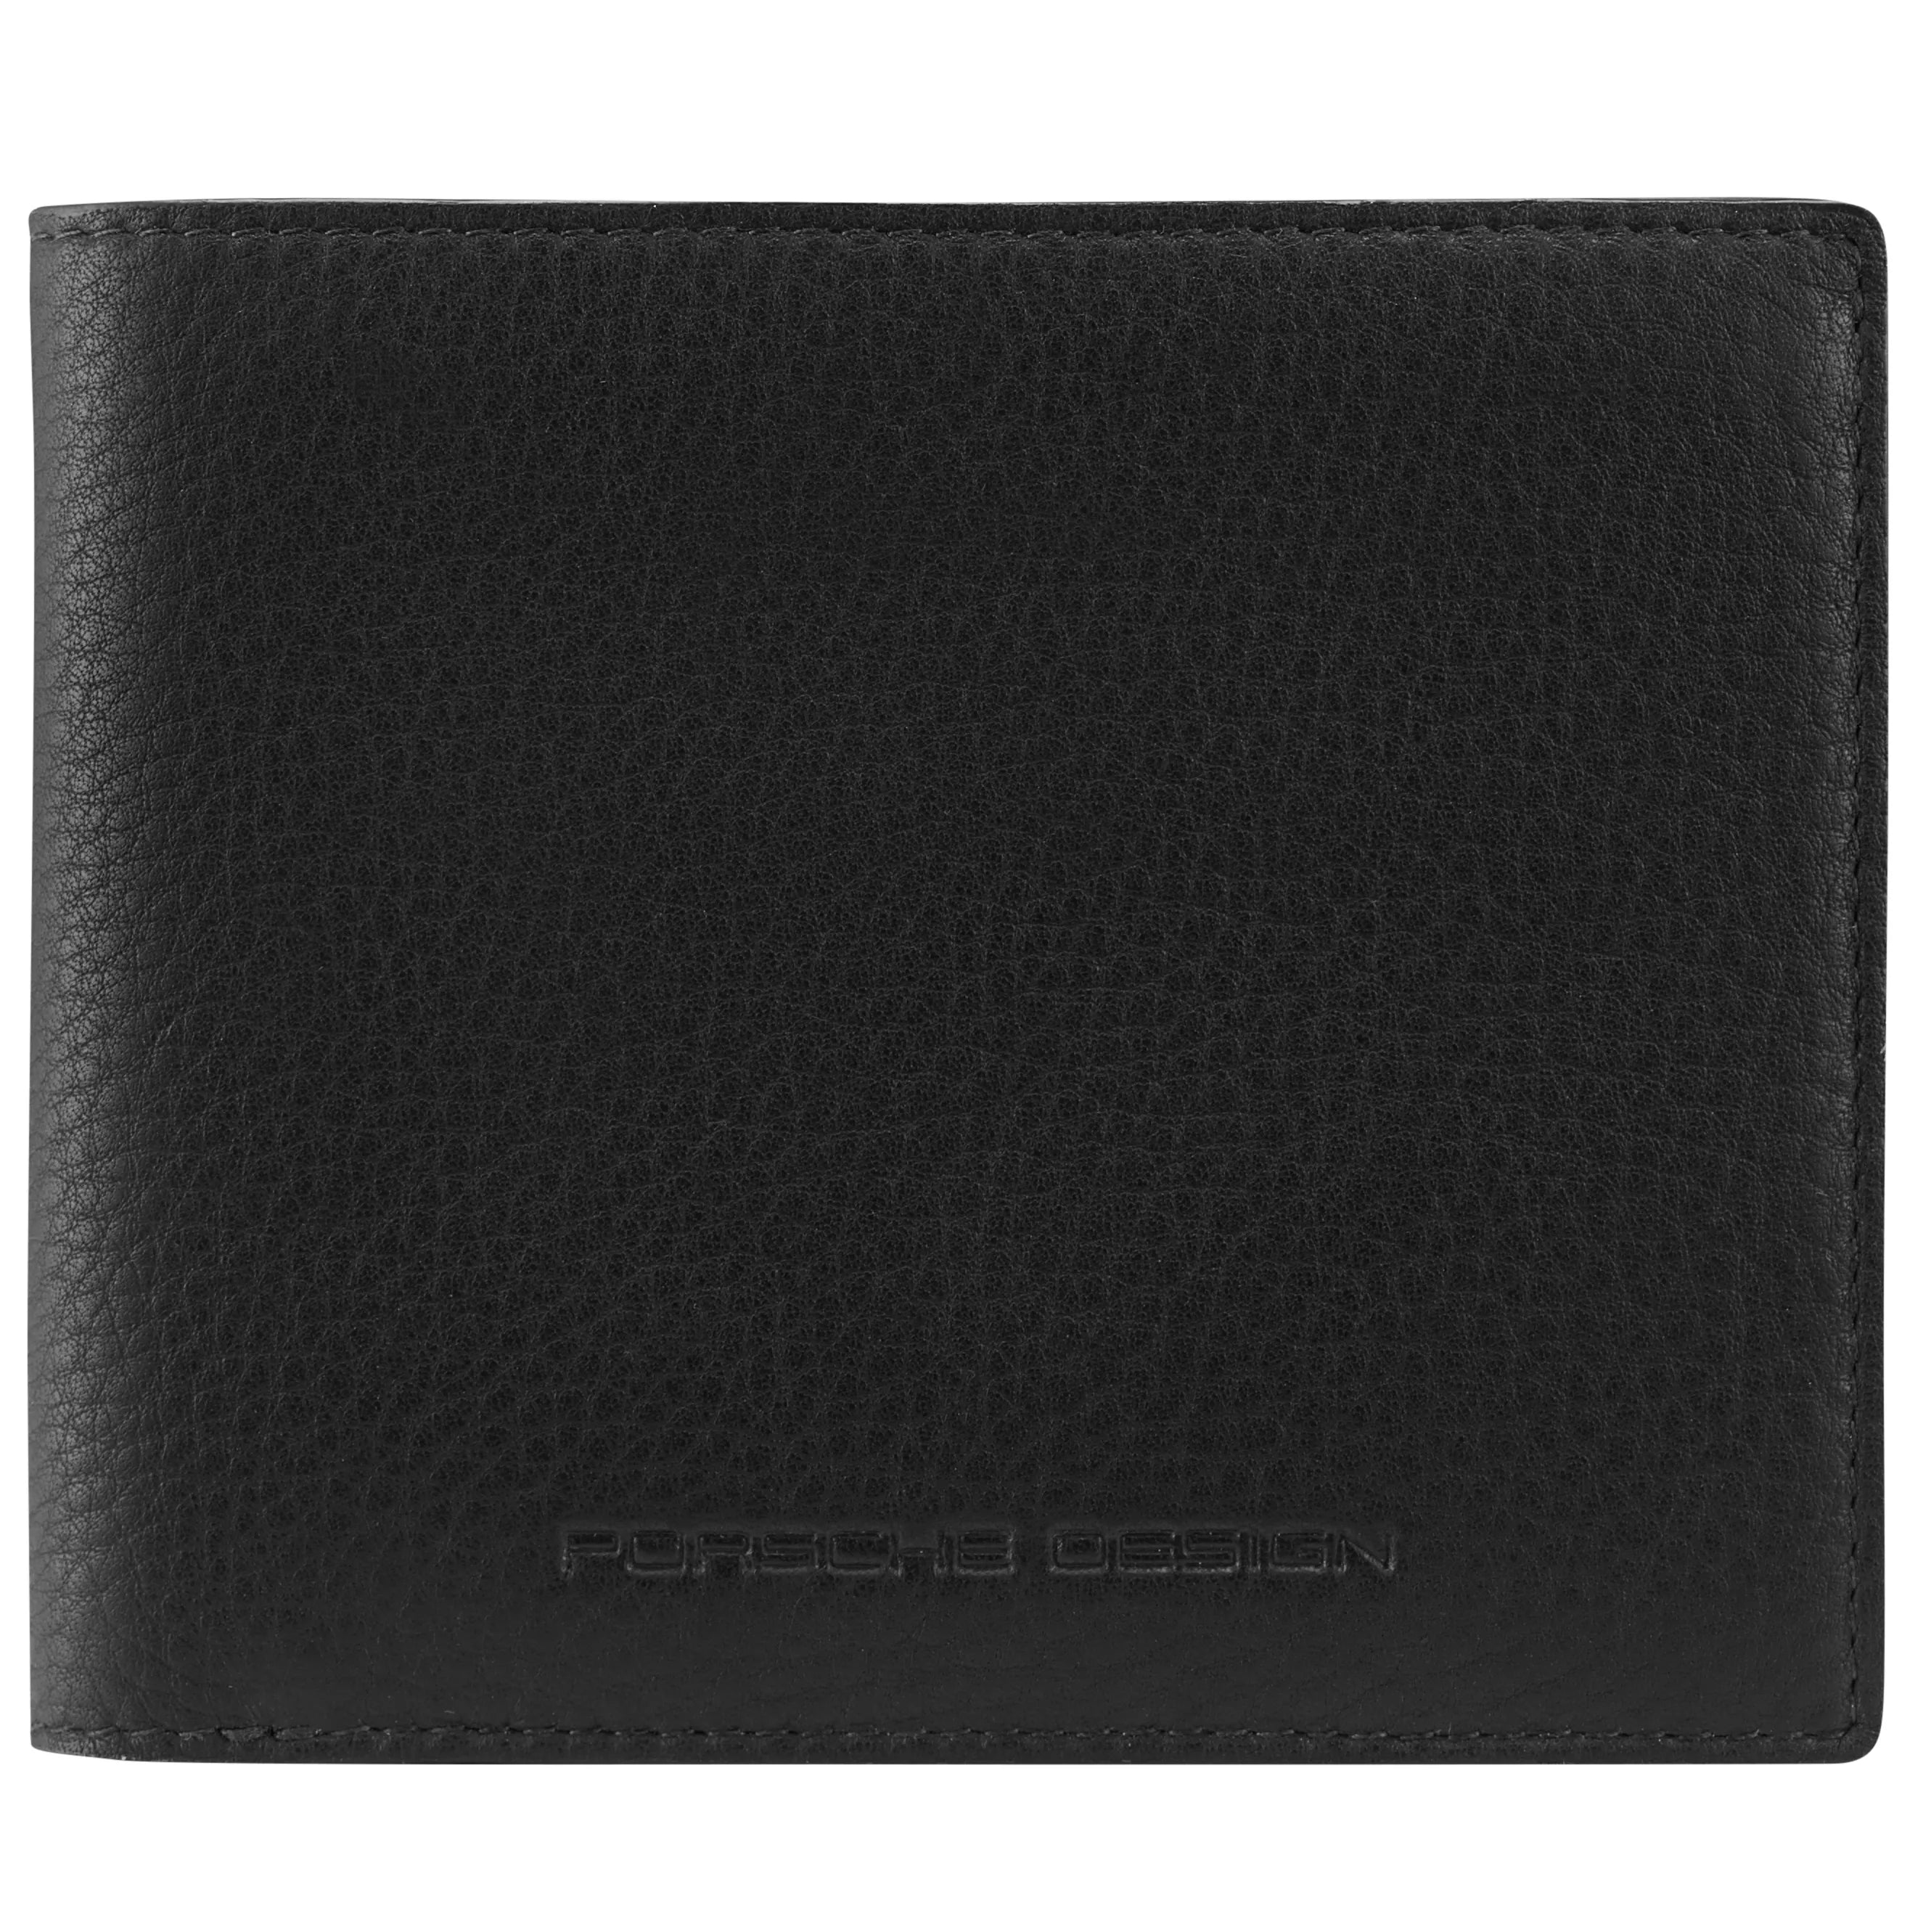 Porsche Design Accessories Business Wallet 4 RFID 11 cm - Black